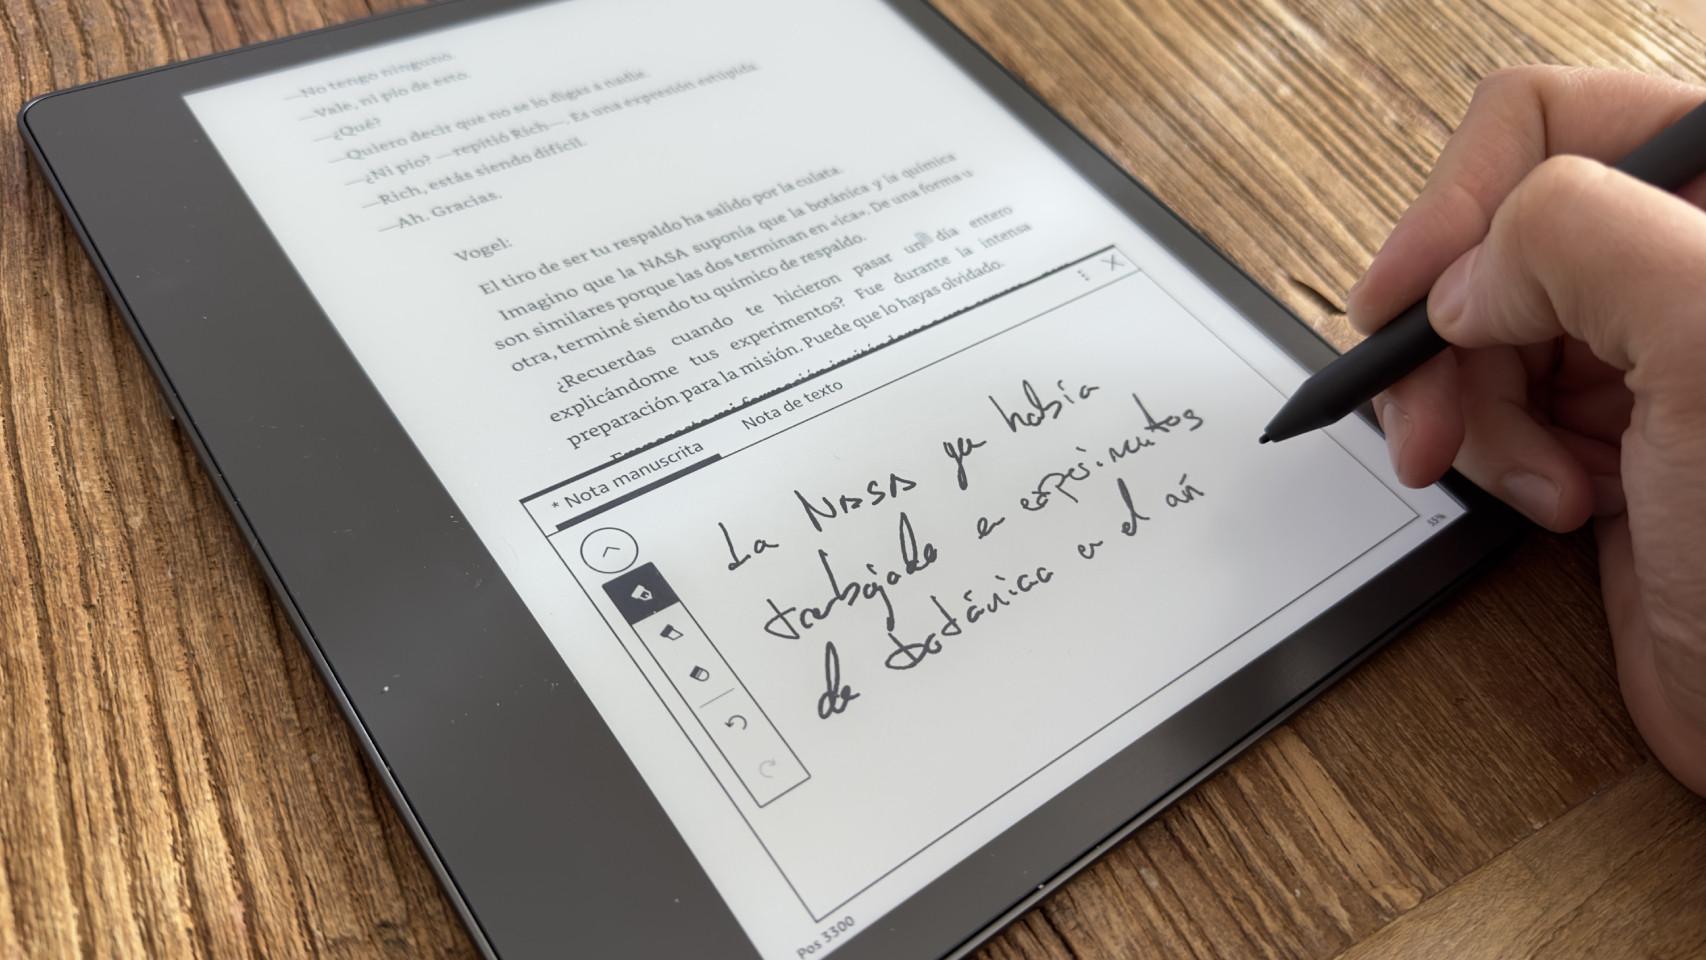 Kindle Scribe: opinión, análisis y características